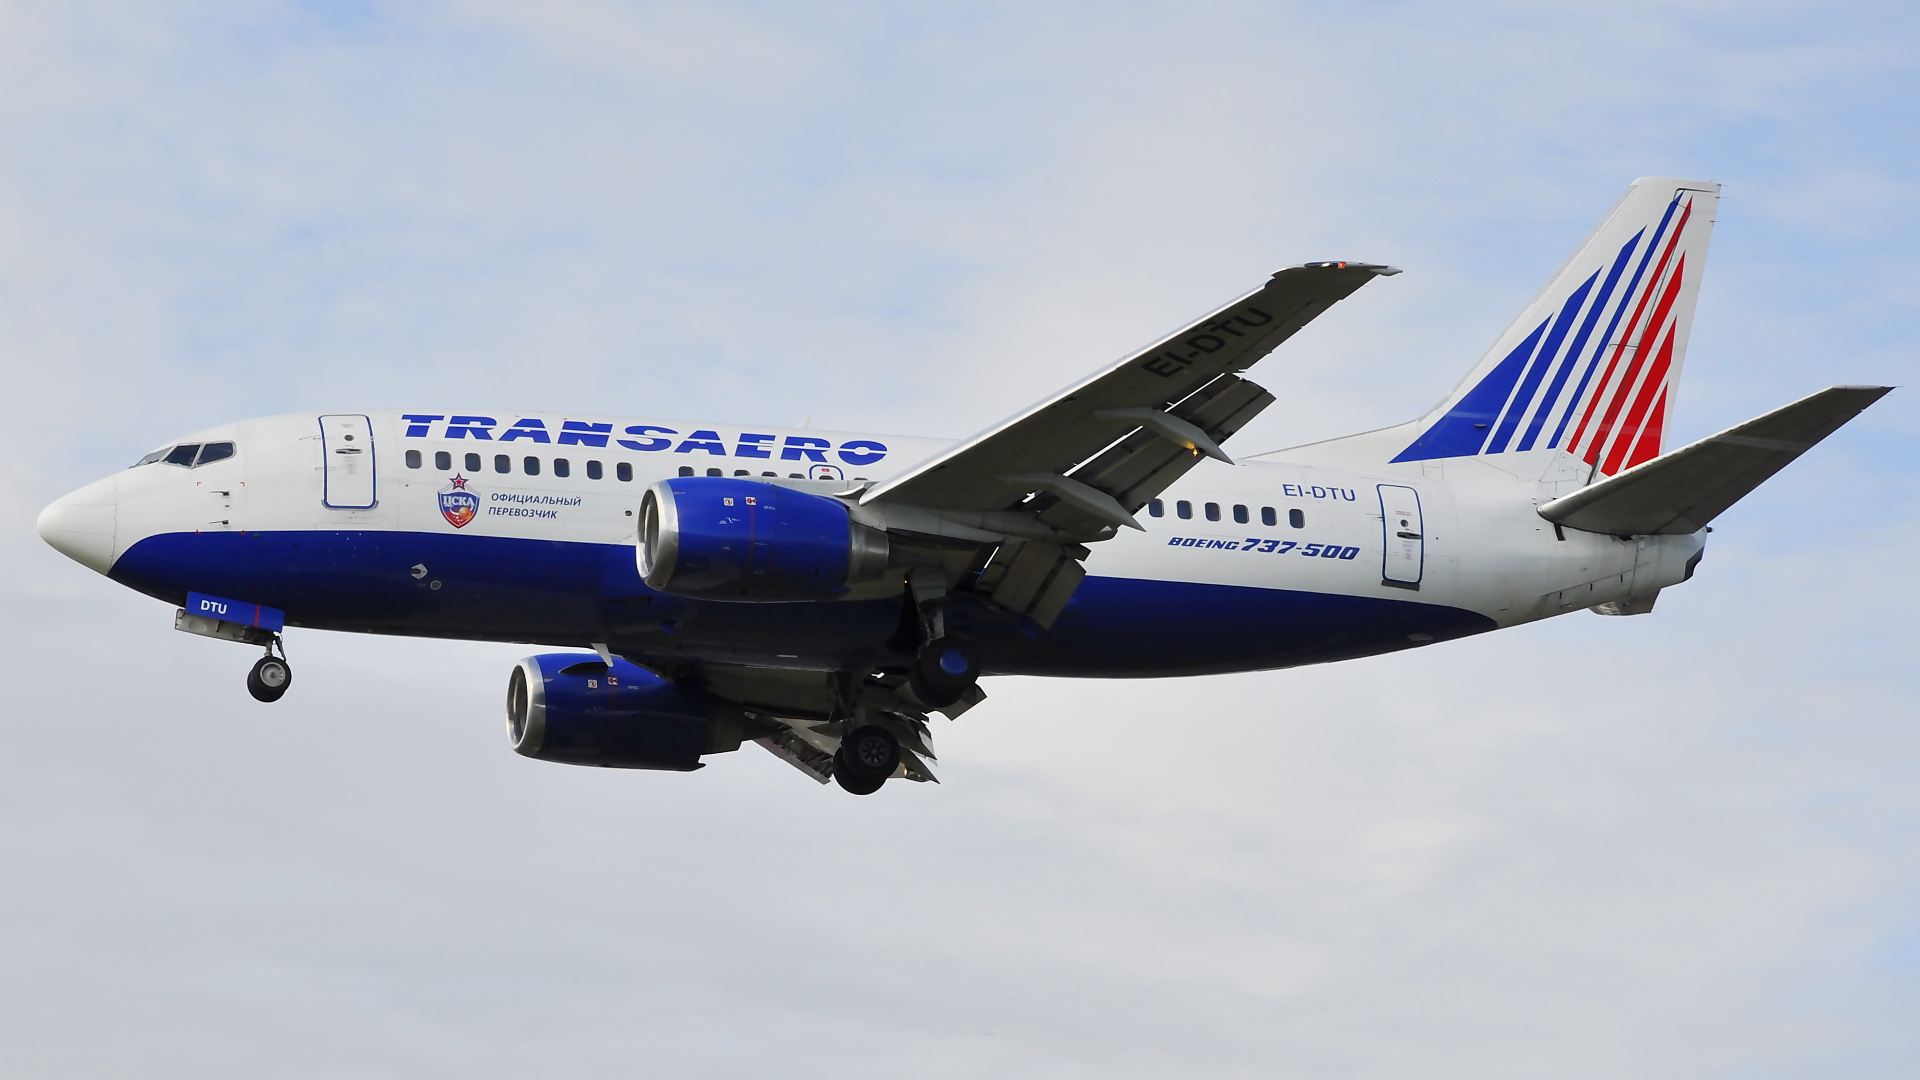 EI-DTU ✈ Transaero Airlines Boeing 737-5Y0 @ London-Heathrow